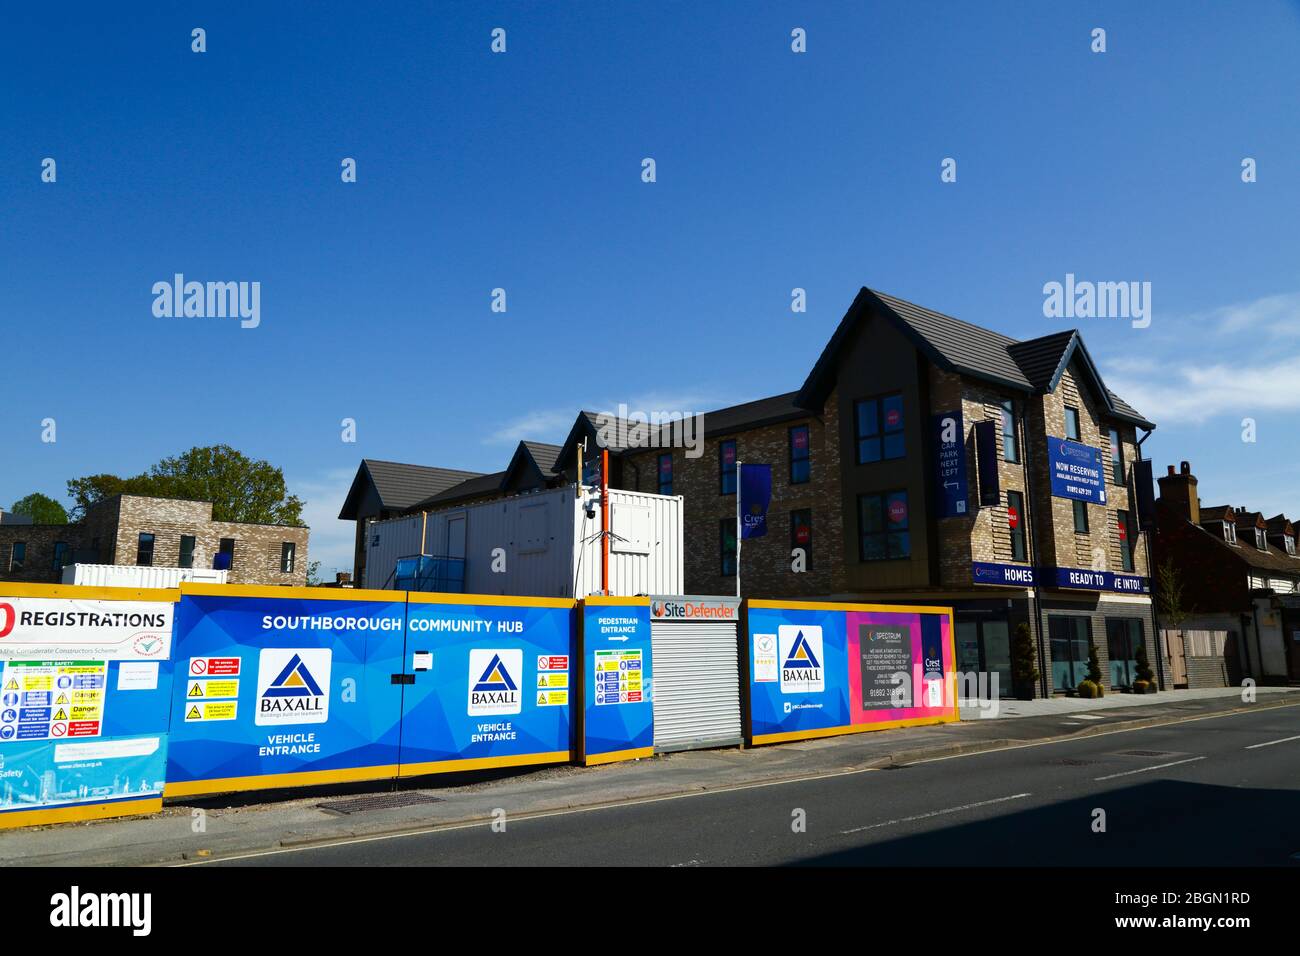 Ufficio vendite di spettro costruito sul nuovo sito di sviluppo del progetto Southborough Community Hub, London Road, Southborough, Kent, Inghilterra Foto Stock